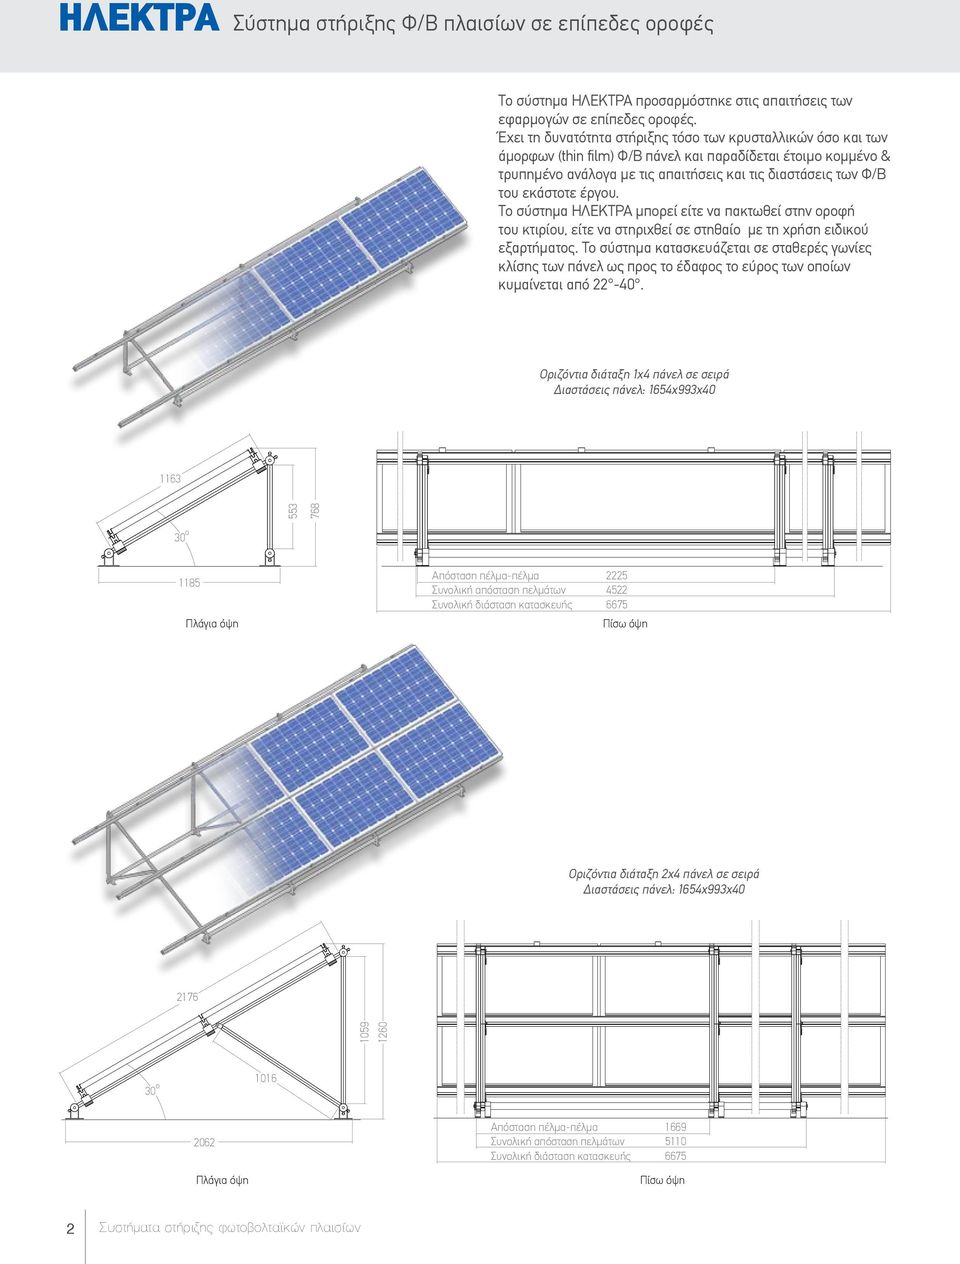 εκάστοτε έργου. Το σύστημα ΗΛΕΚΤΡΑ μπορεί είτε να πακτωθεί στην οροφή του κτιρίου, είτε να στηριχθεί σε στηθαίο με τη χρήση ειδικού εξαρτήματος.